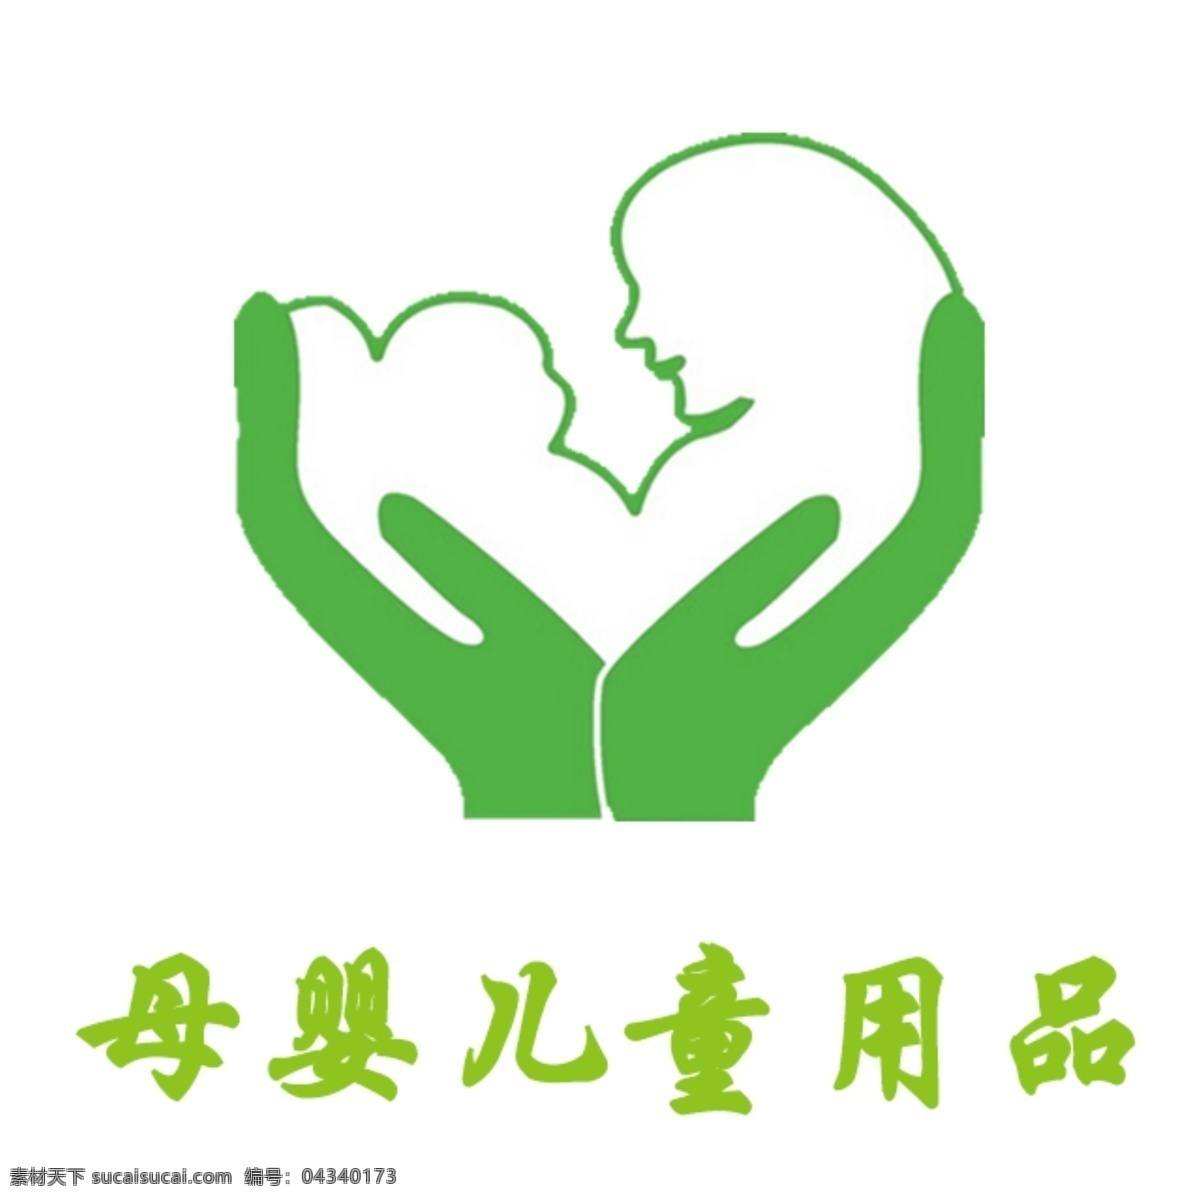 母婴 儿童 矢量图 母婴儿童图 母婴矢量图 母婴儿童 母婴标志